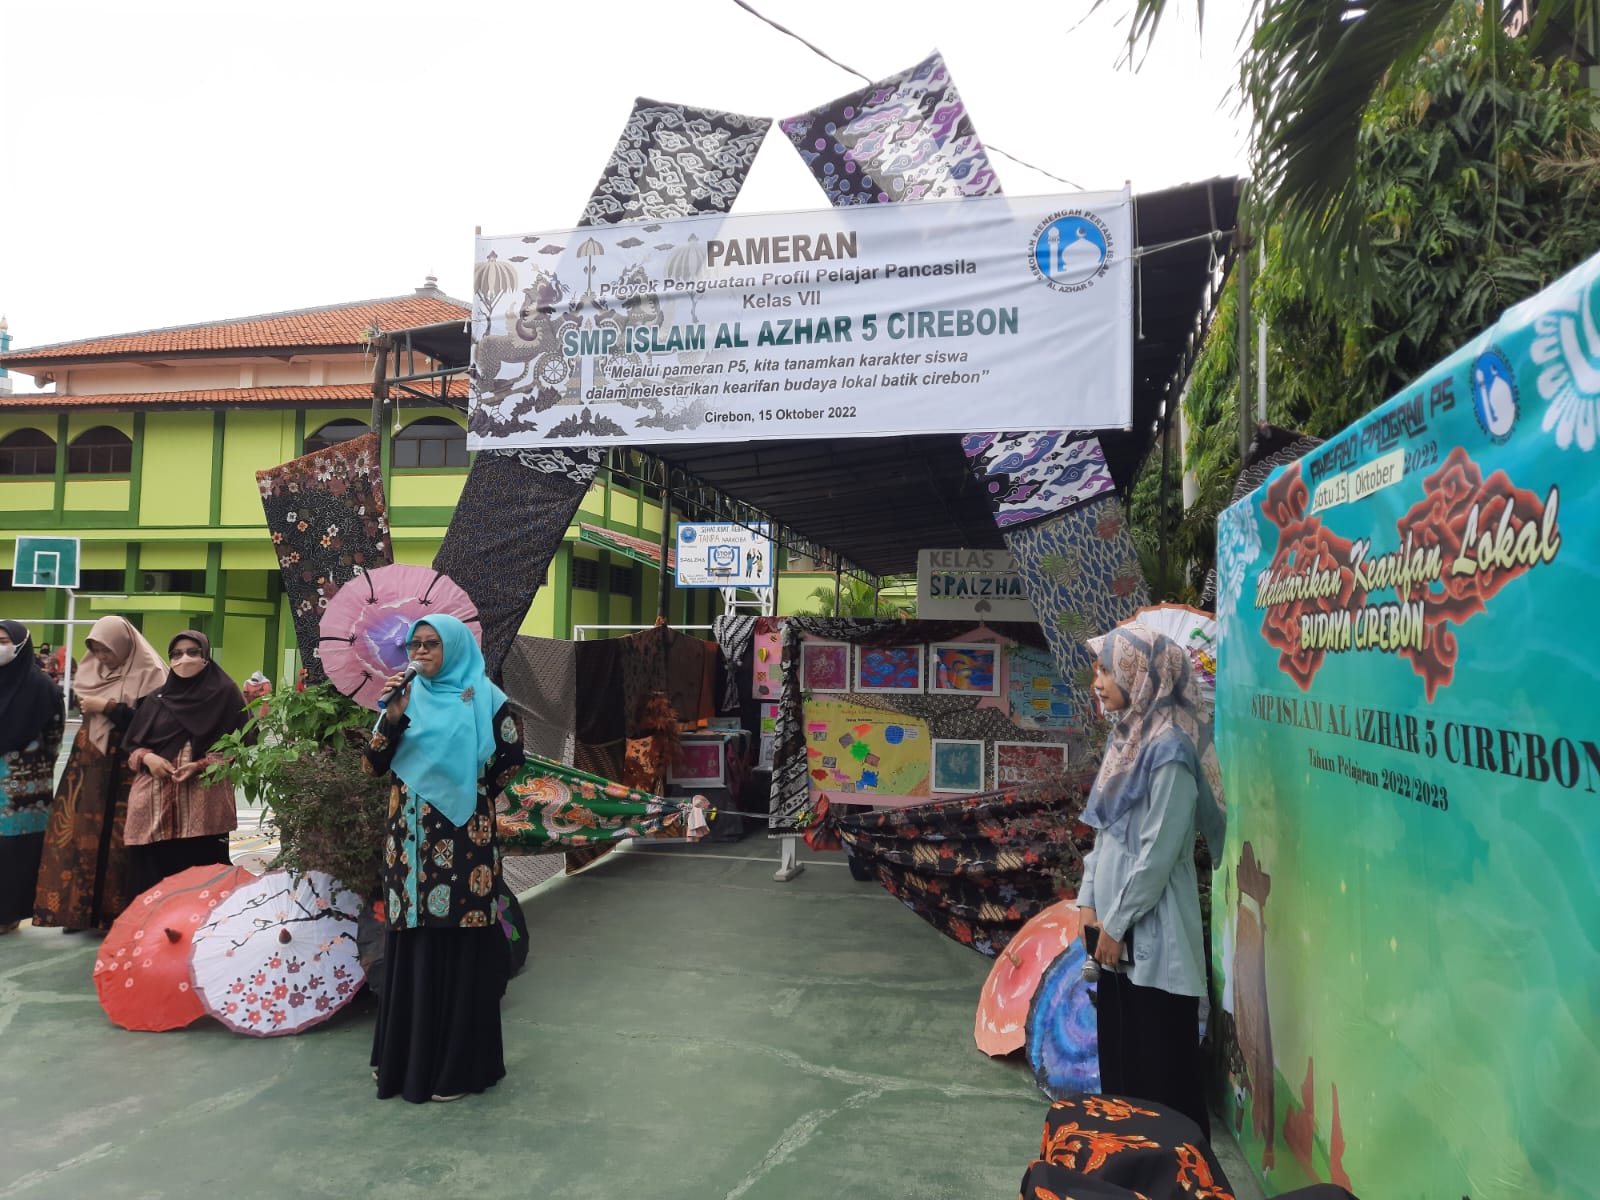 SMP Islam Al Azhar 5 Cirebon Menggelar Pameran P5 Kelas VII